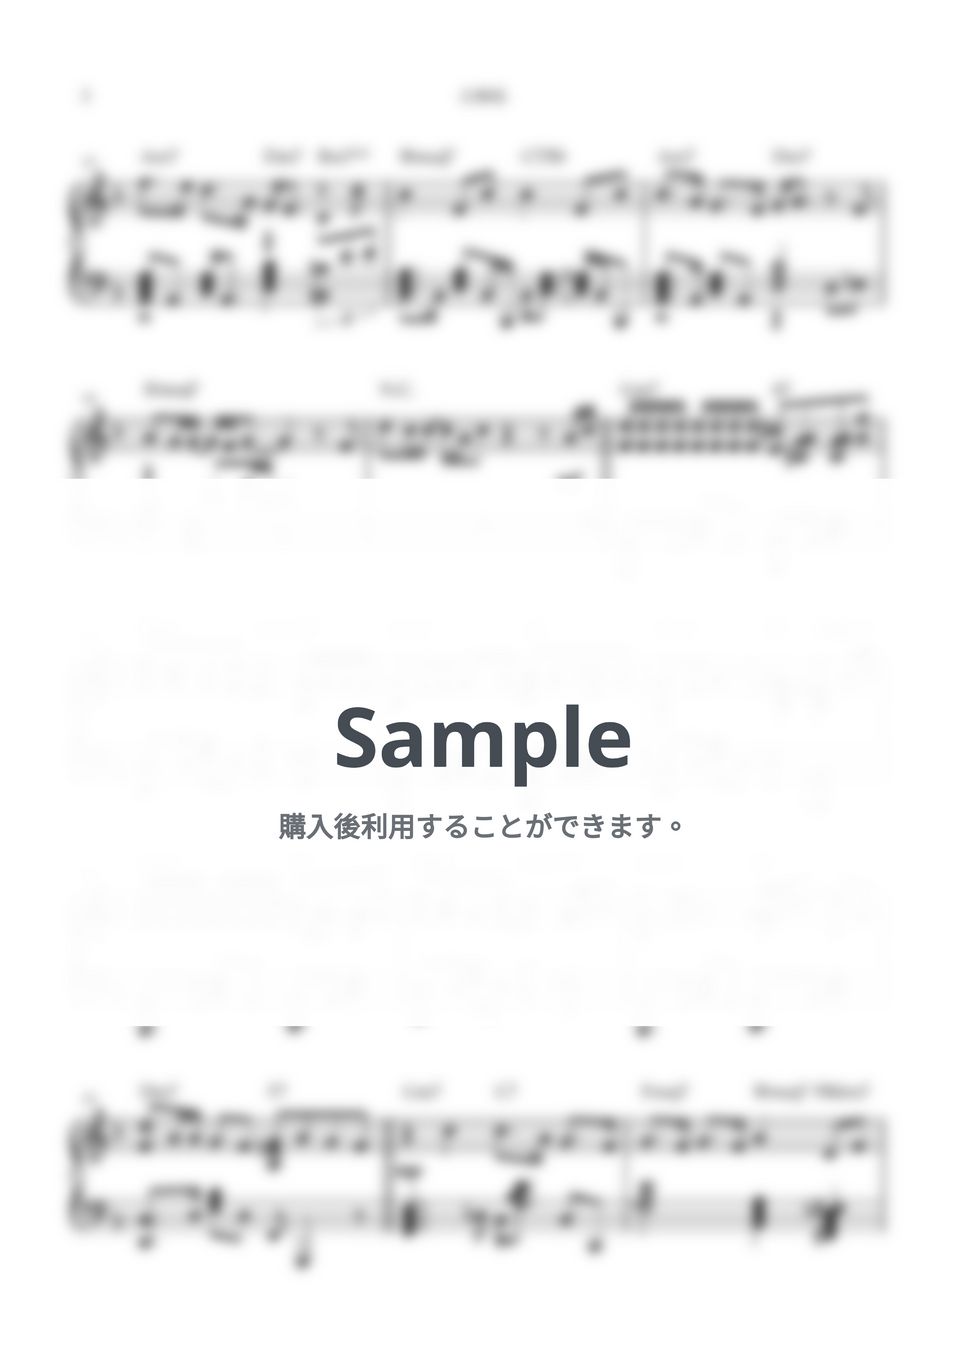 キタニタツヤ - 白無垢 (ピアノソロ/白無垢/キタニタツヤ) by kanapiano